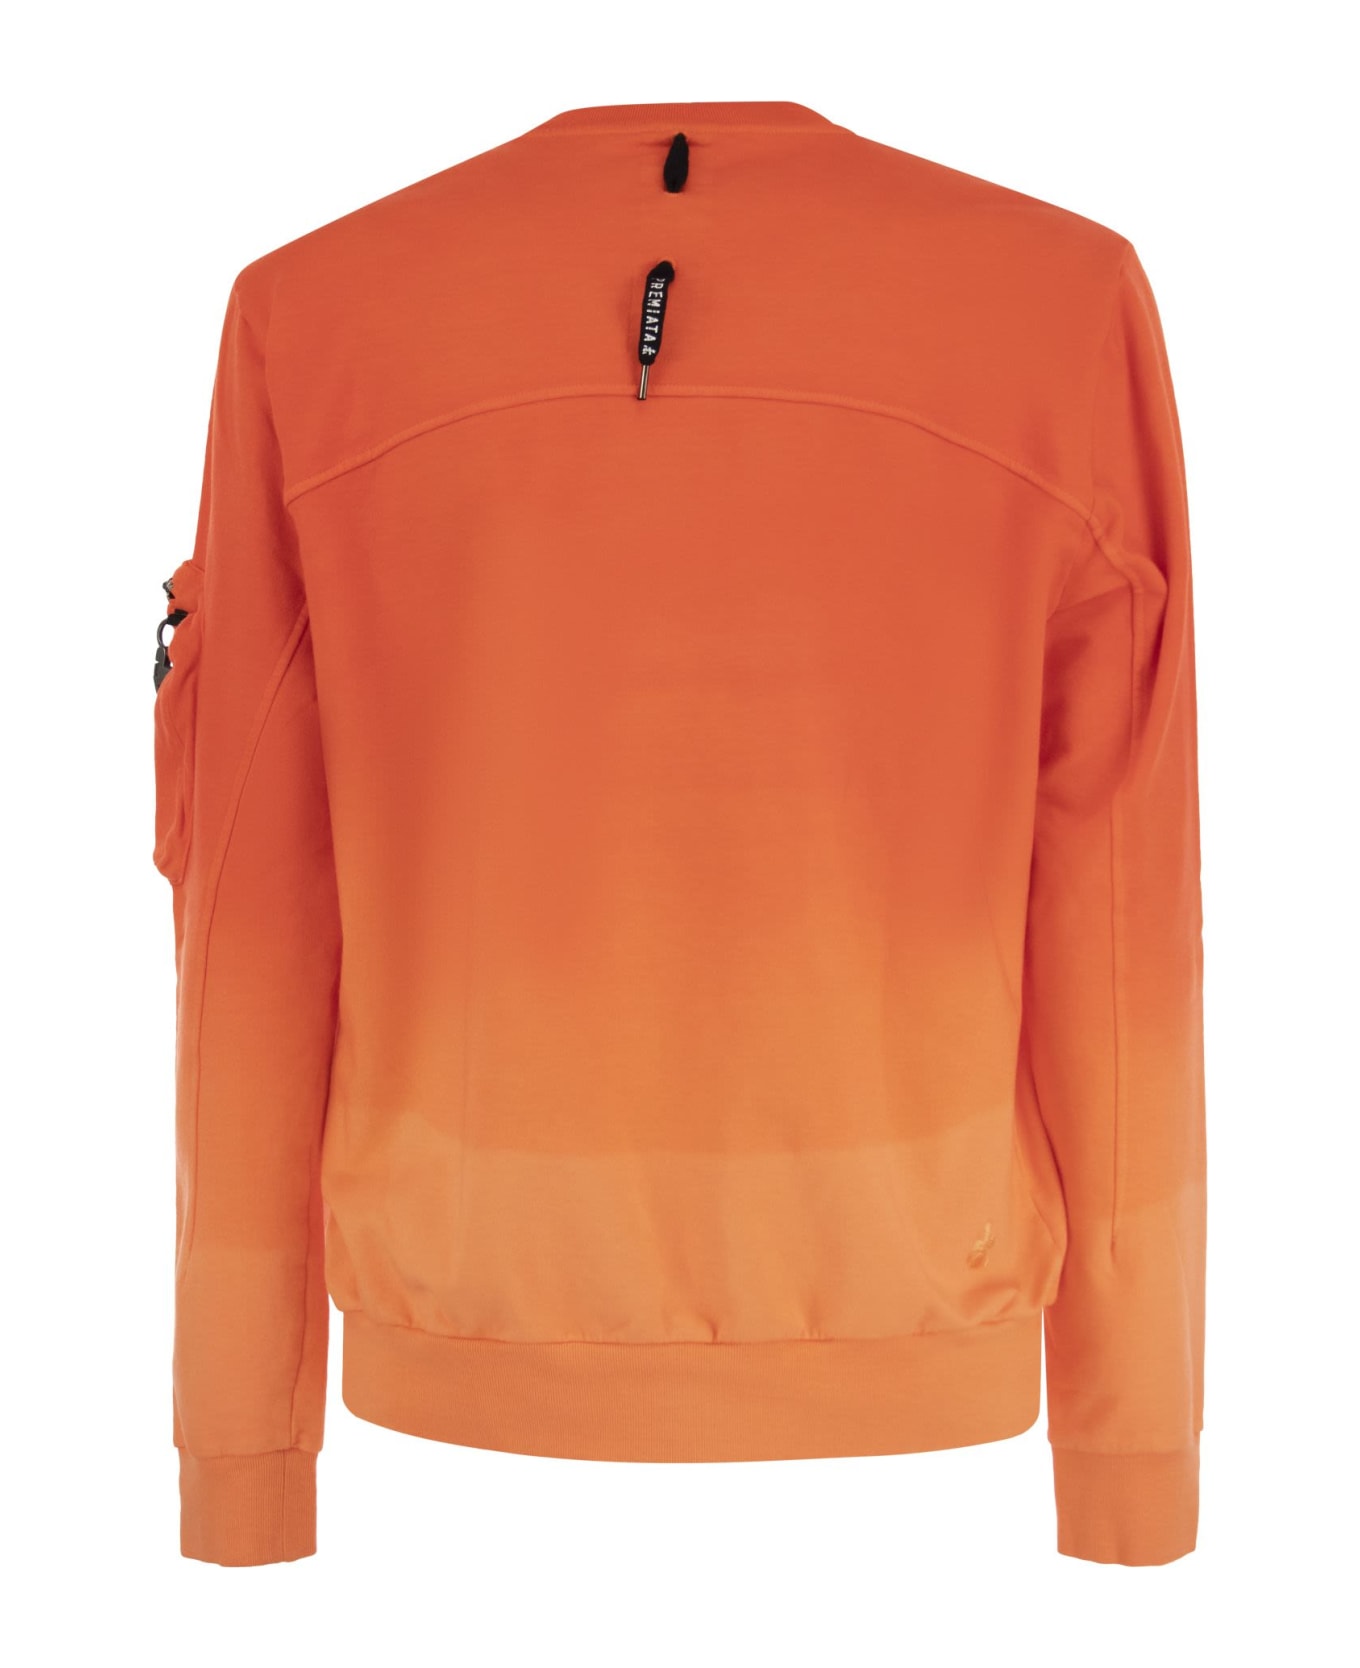 Premiata Sweatshirt With Logo - Orange